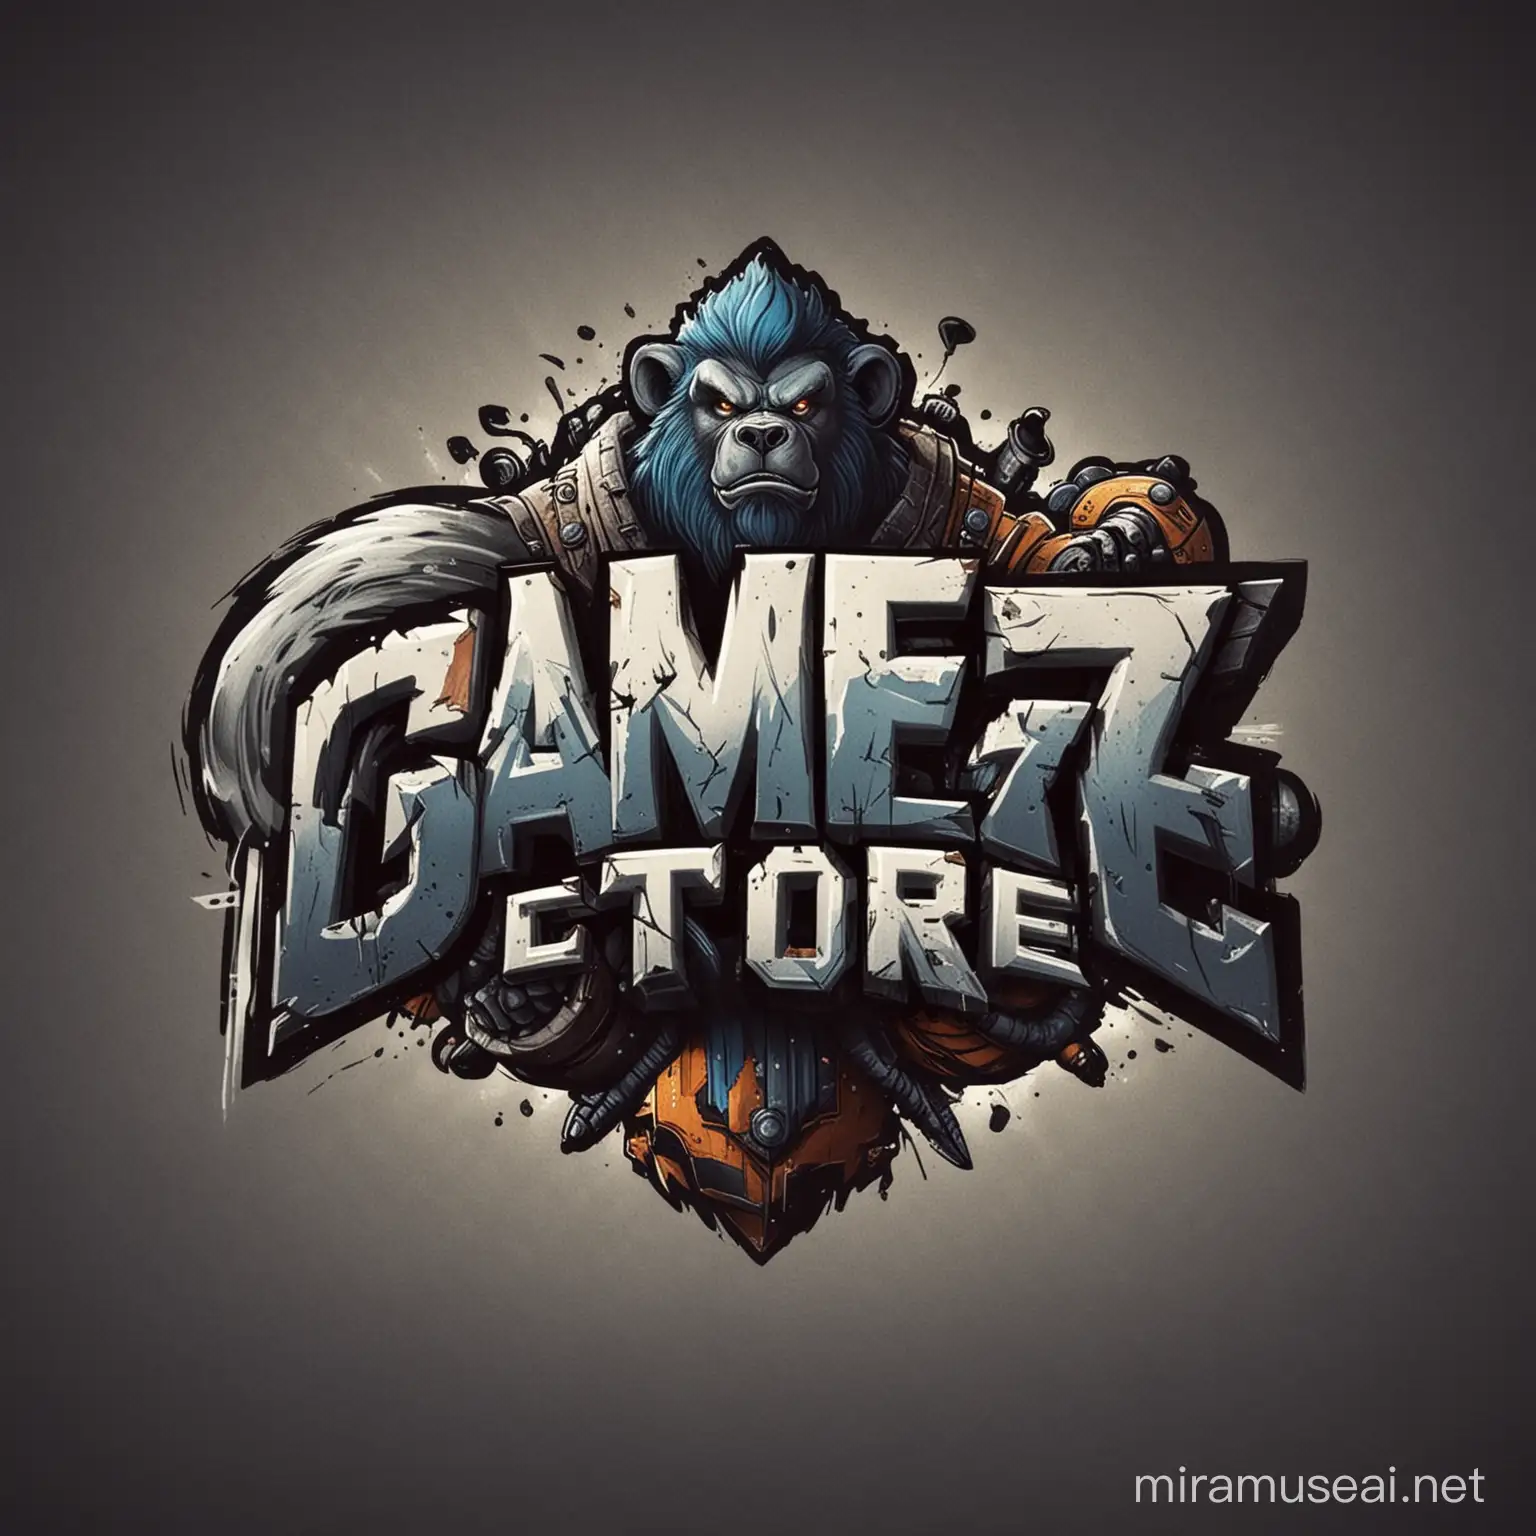 quiero una imagen que lleve el nombre de GAMEZ STORE para una empresa en linea
